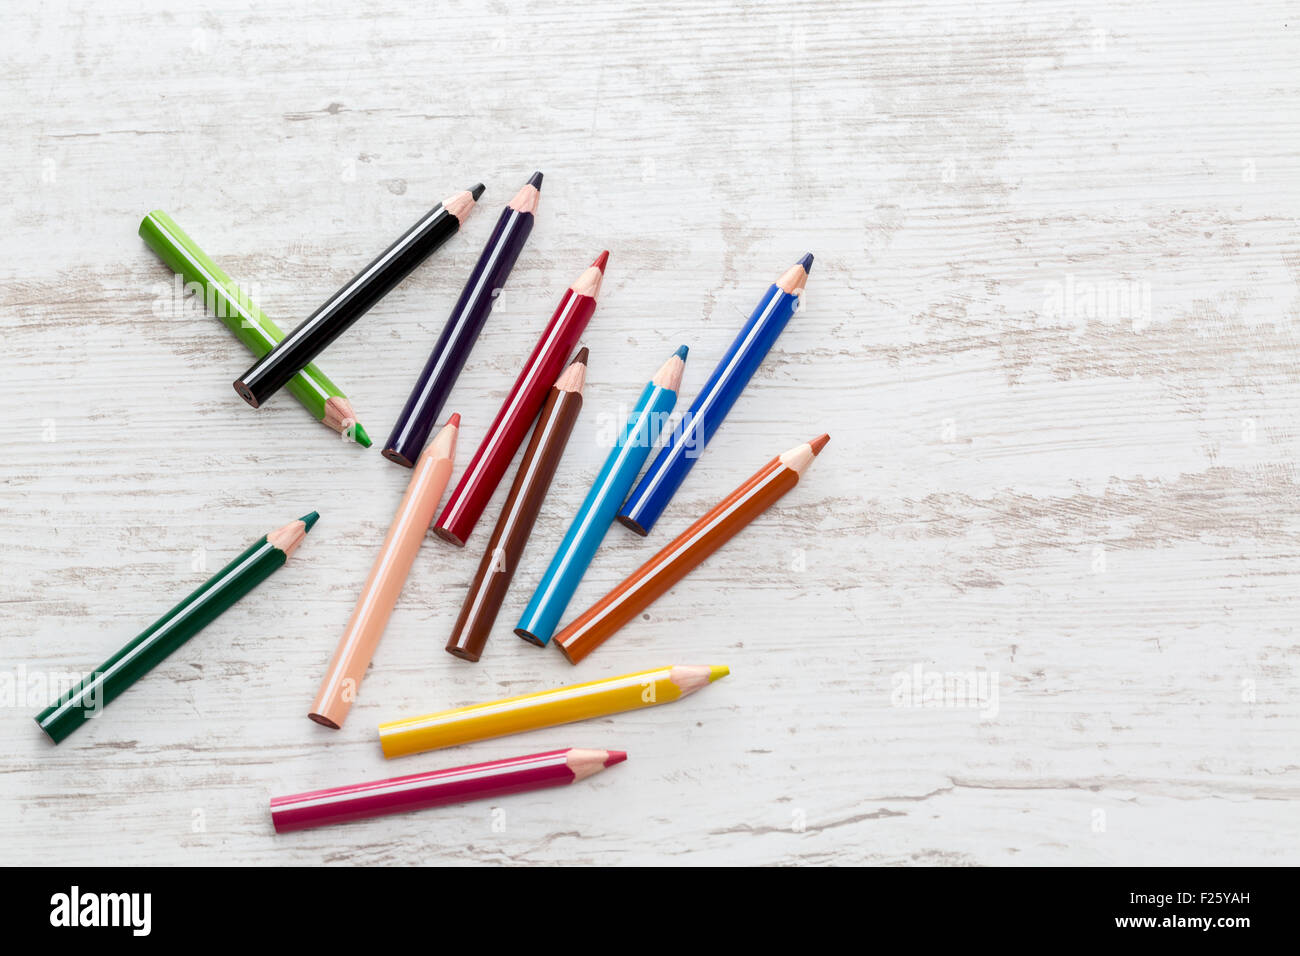 Vue de dessus d'un tas de crayons de couleur sur une table en bois blanc. Banque D'Images